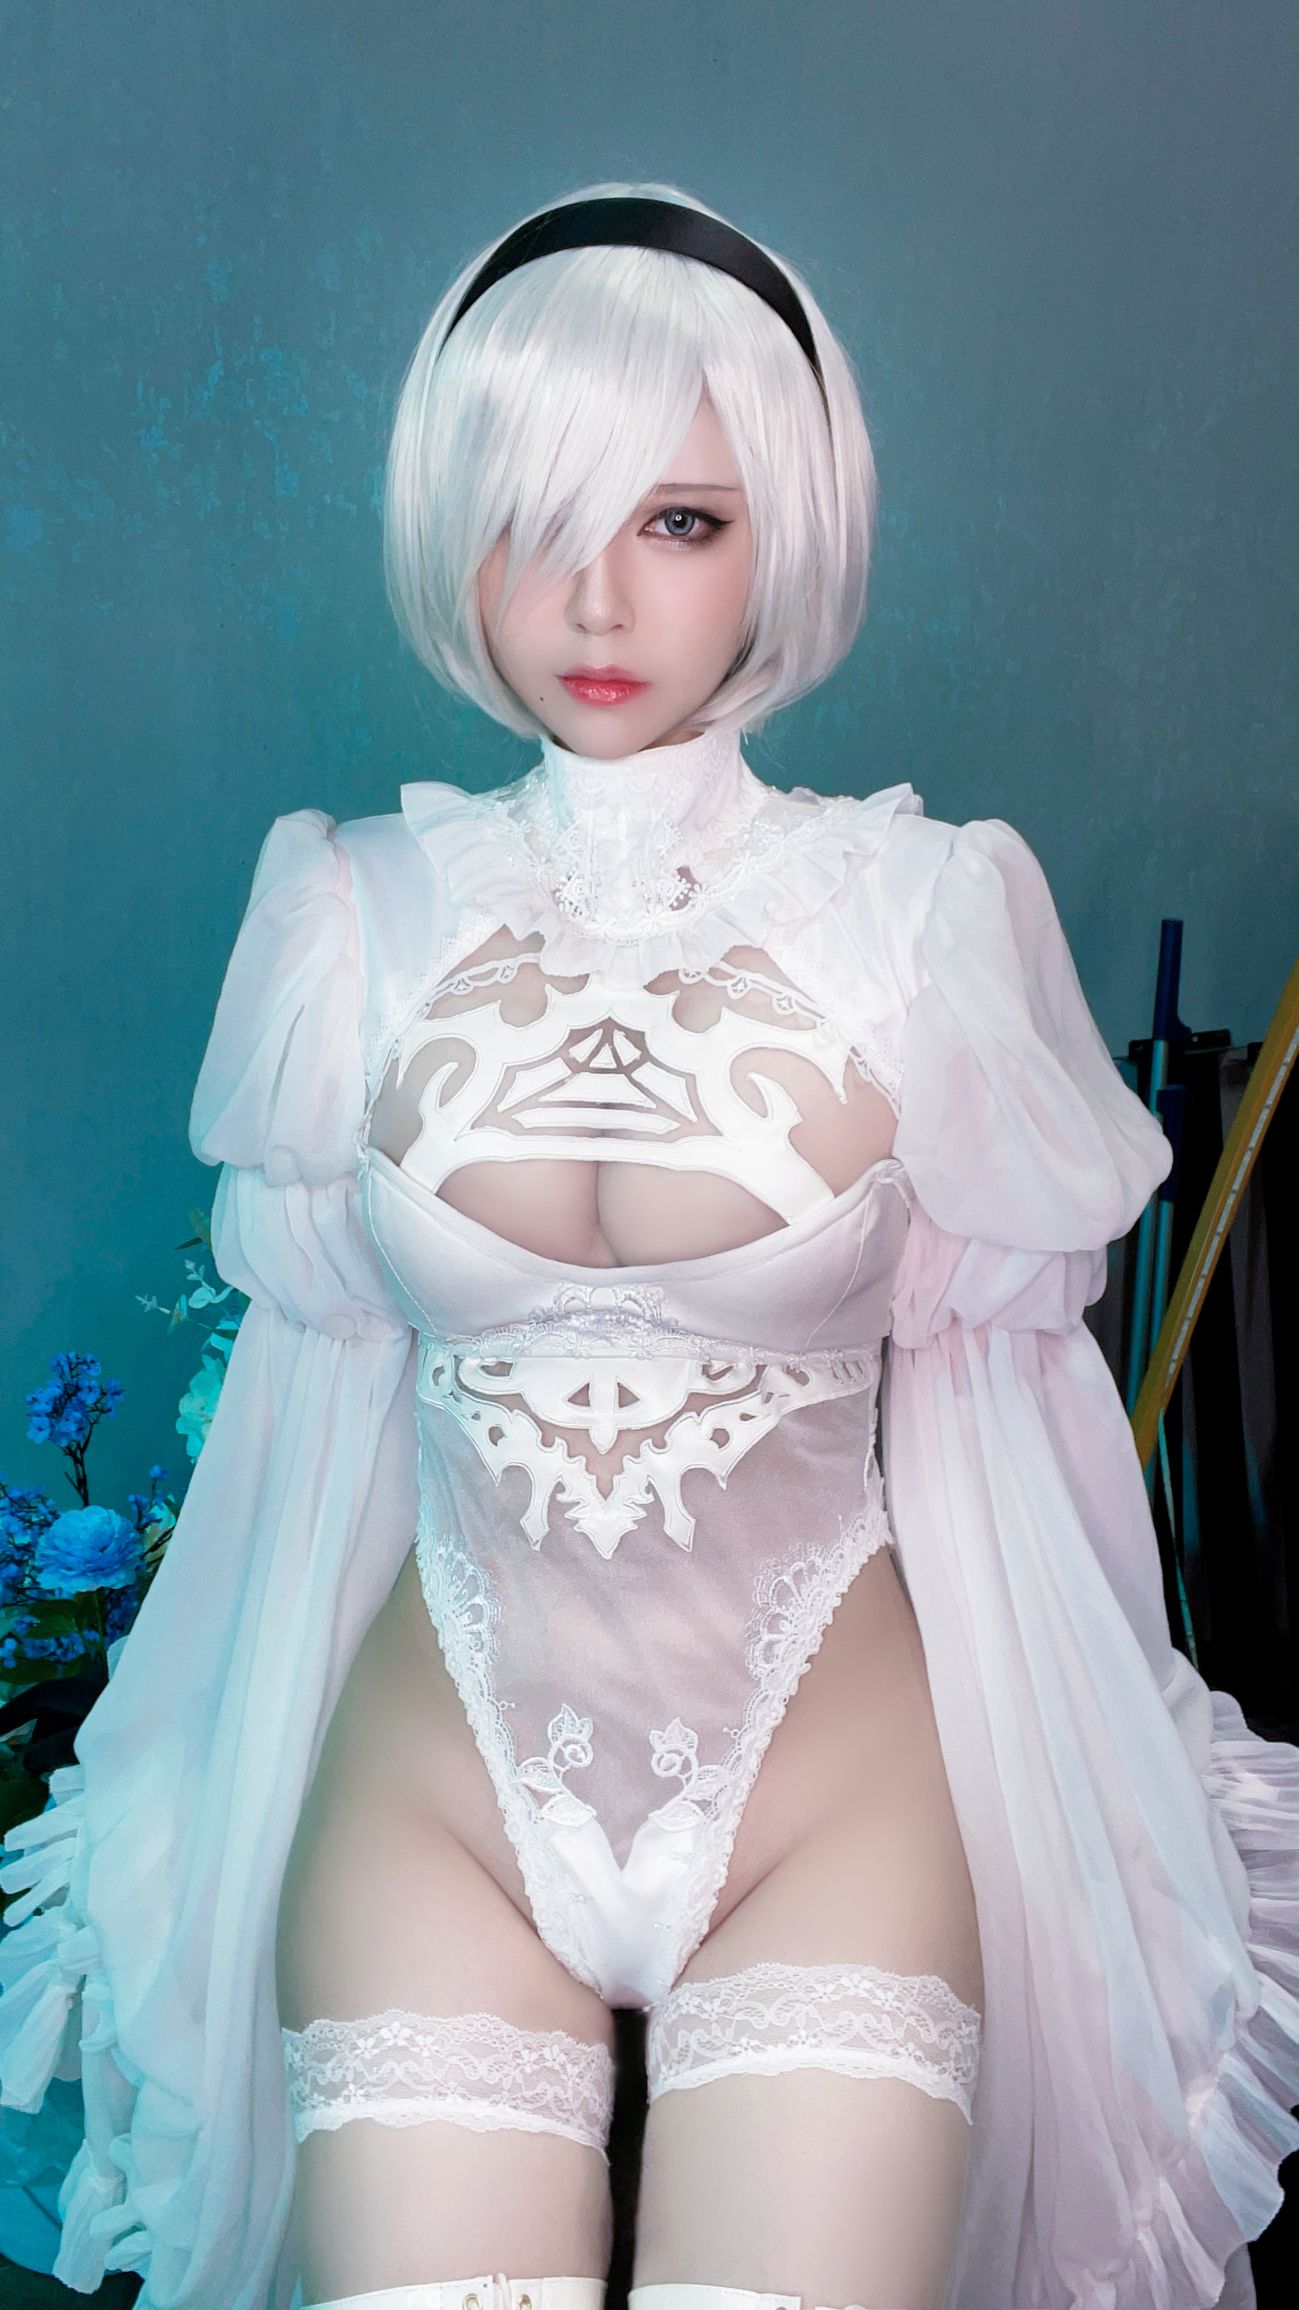 微博美少女半半子Cosplay性感写真Automataヨルハ二号B型 白いドレス (42)